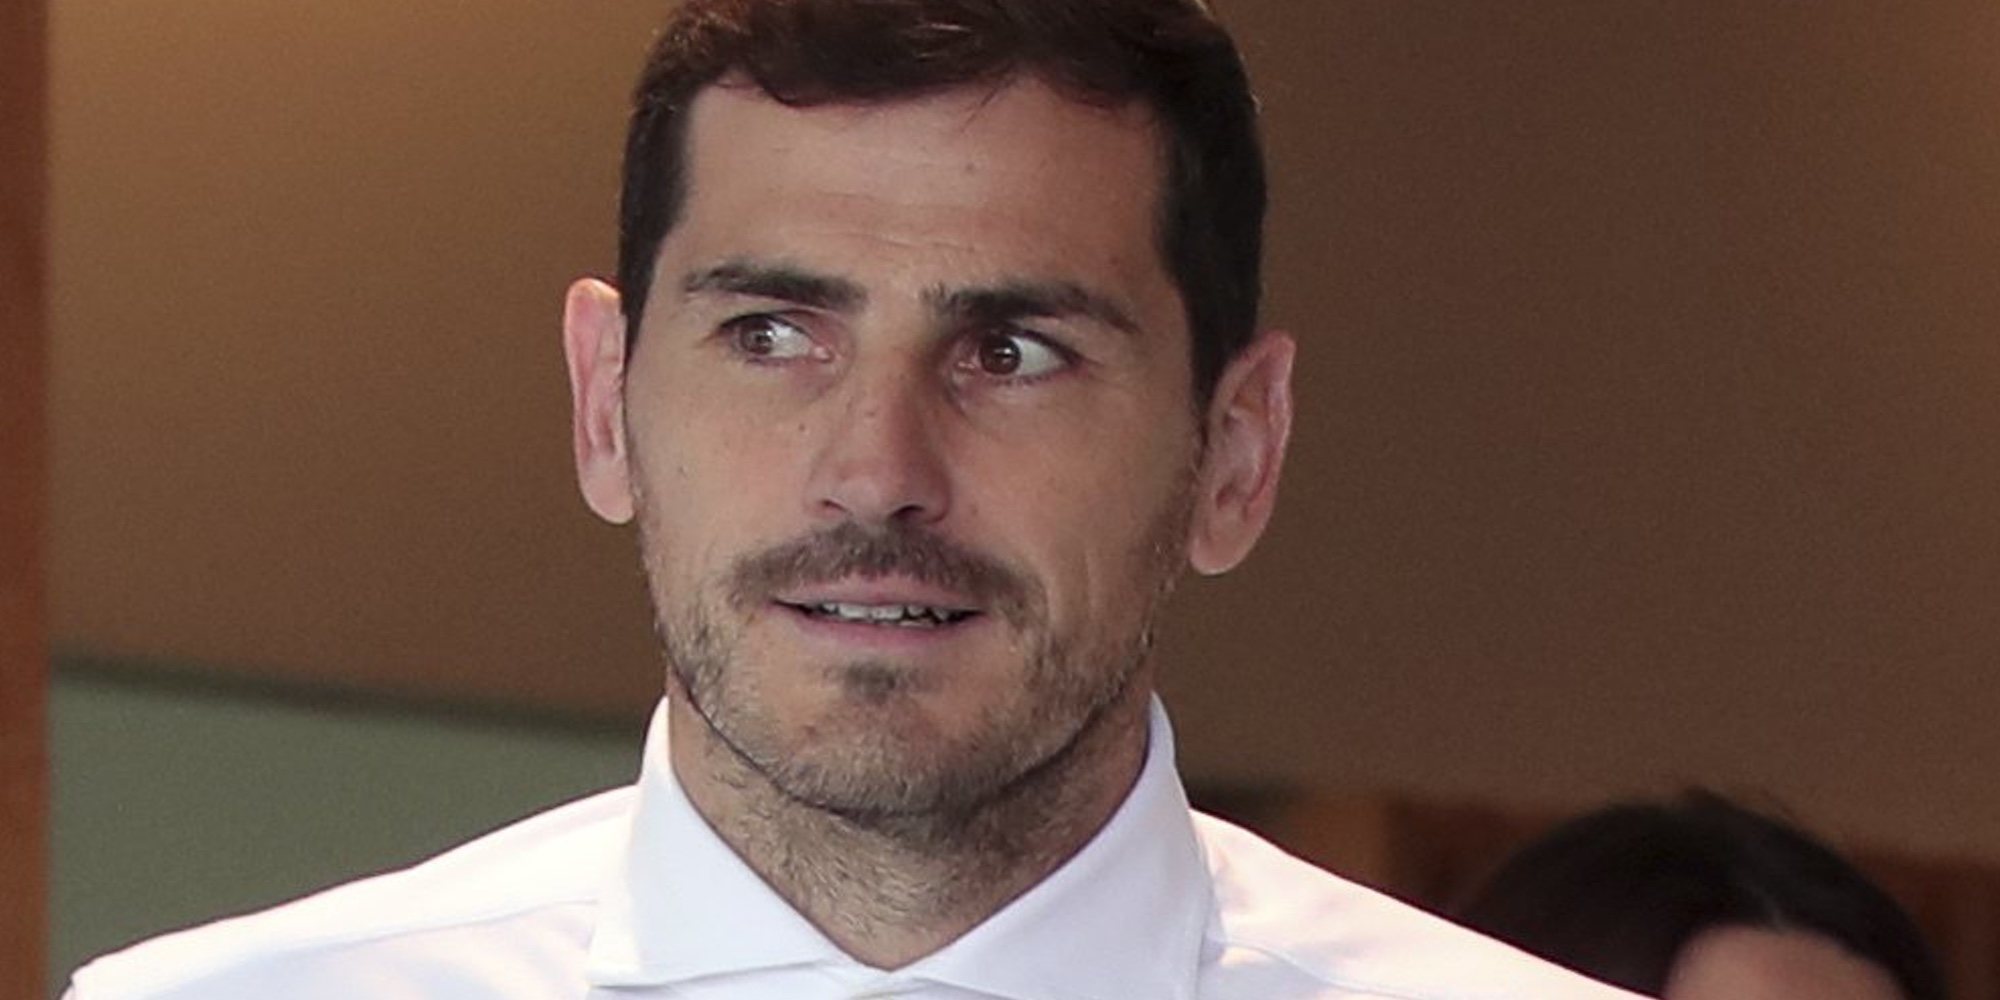 Iker Casillas desmiente que vaya a retirarse del fútbol: "Lo anunciaré cuando llegue el momento"